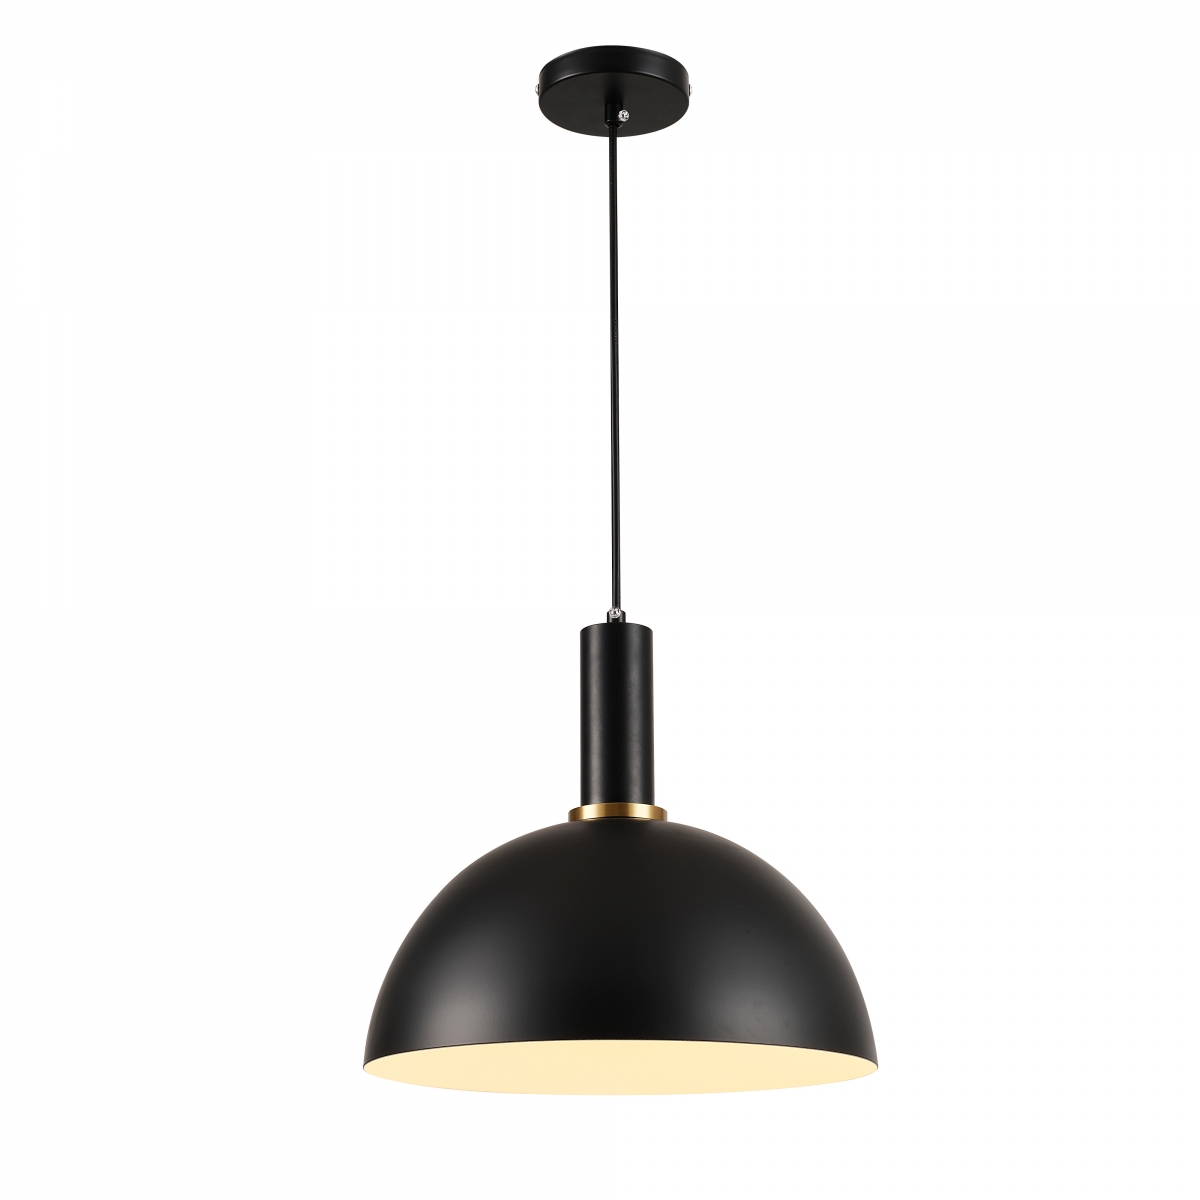 Lampa wisząca Omega, 30 cm średnica, styl skandynawski, czarna